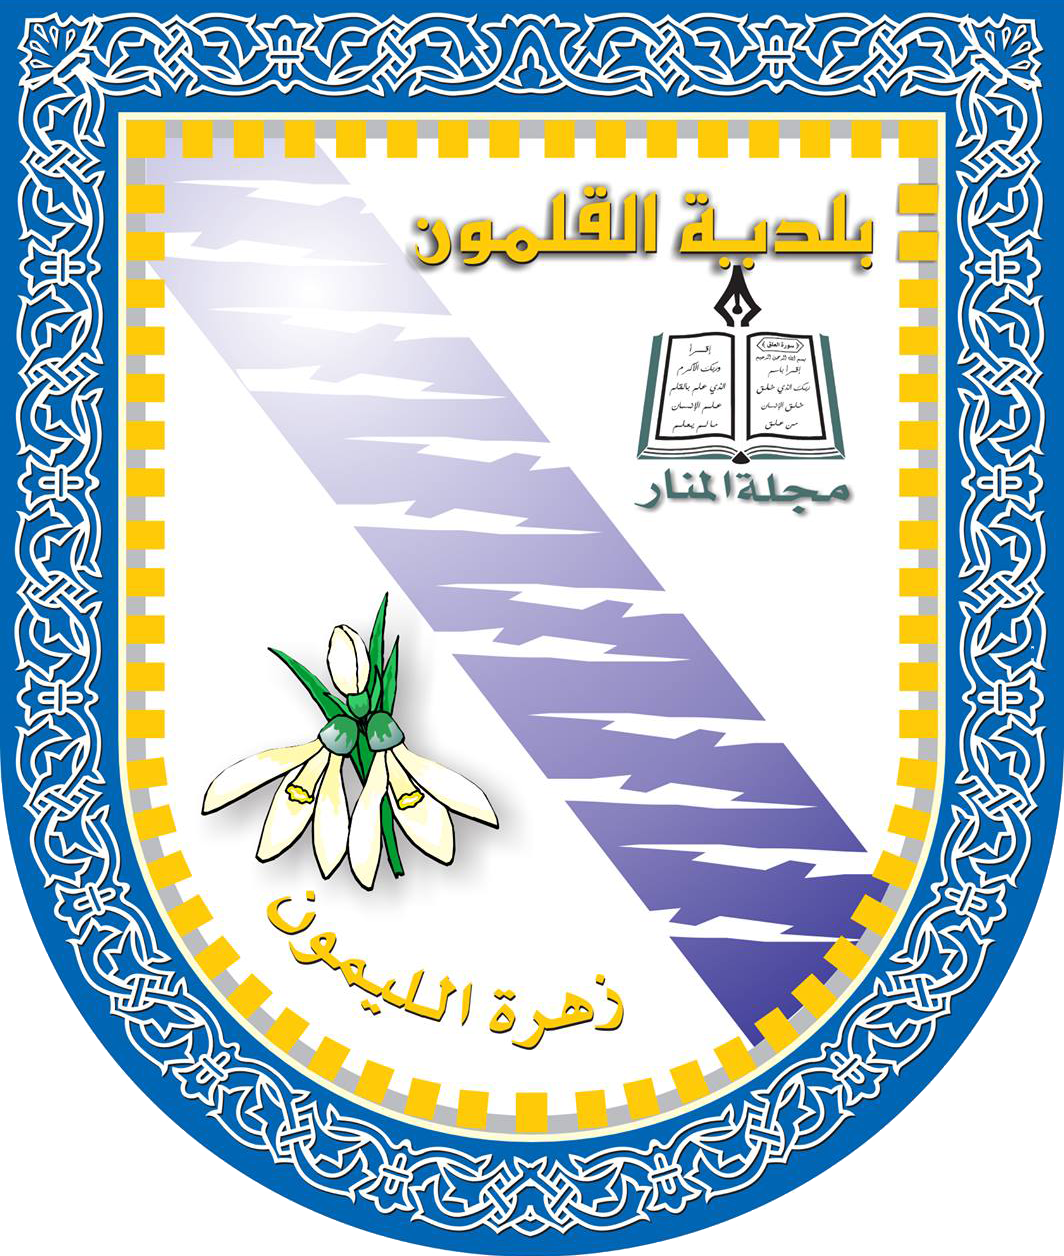 municipality